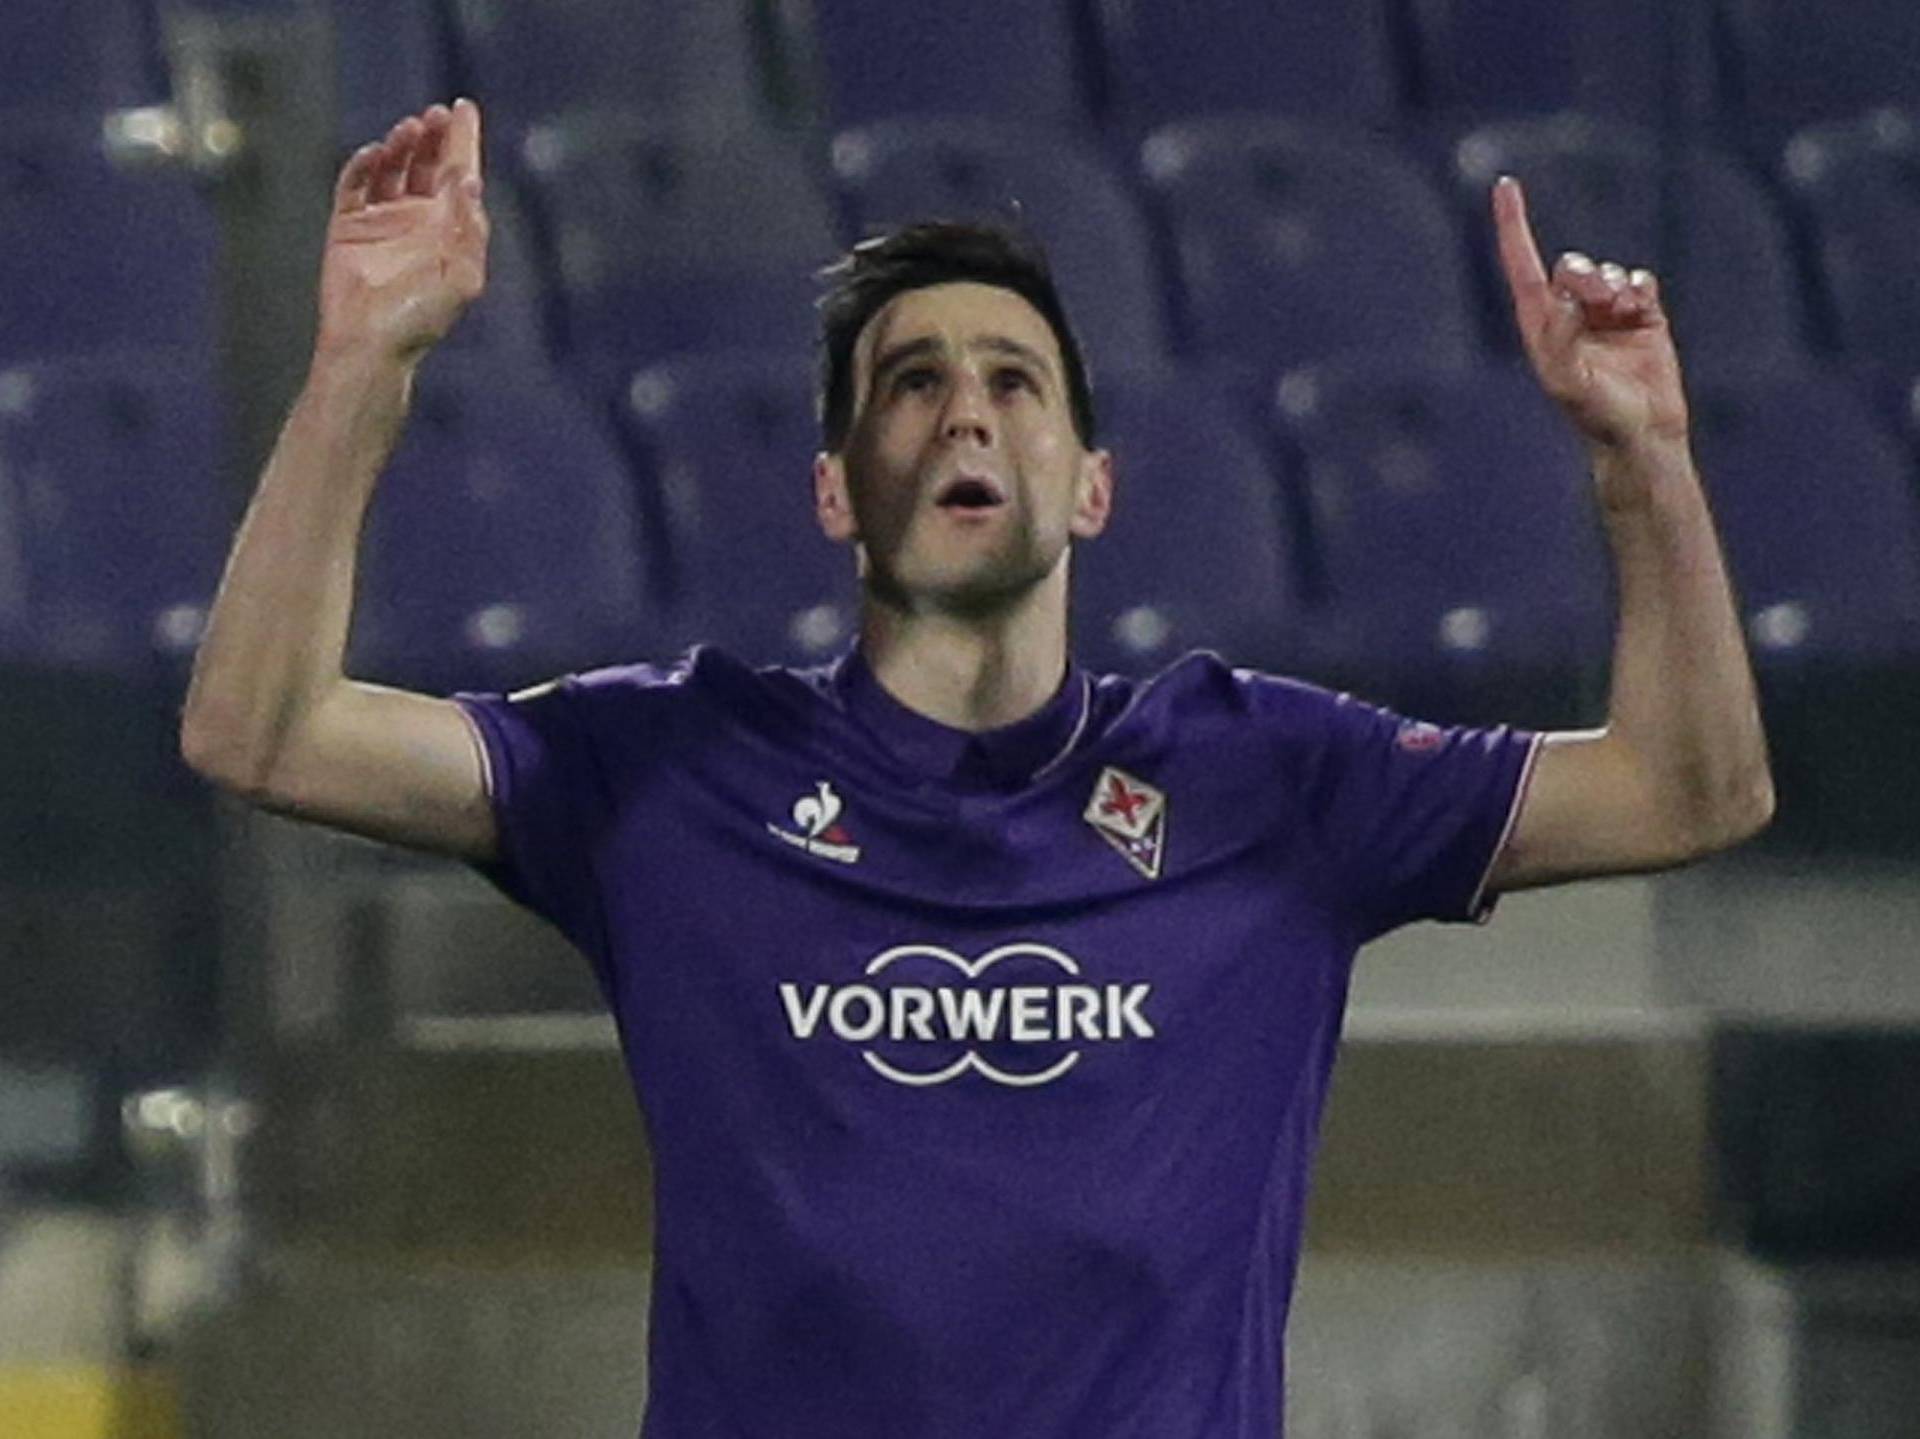 Fiorentina's Nikola Kalinic celebrates scoring their first goal